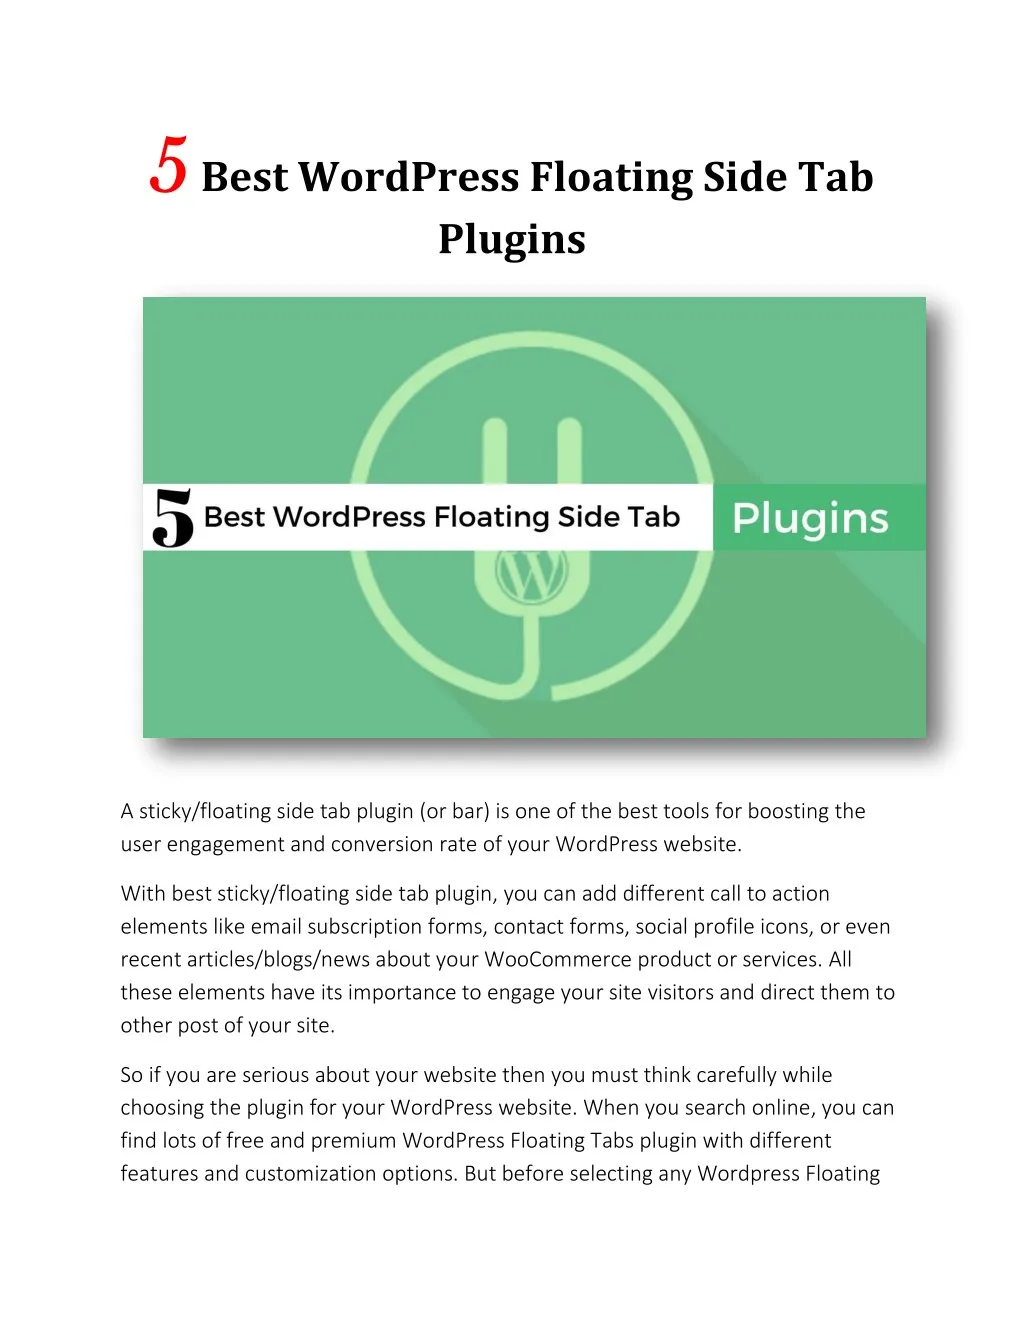 5 5 best wordpress floating side tab plugins